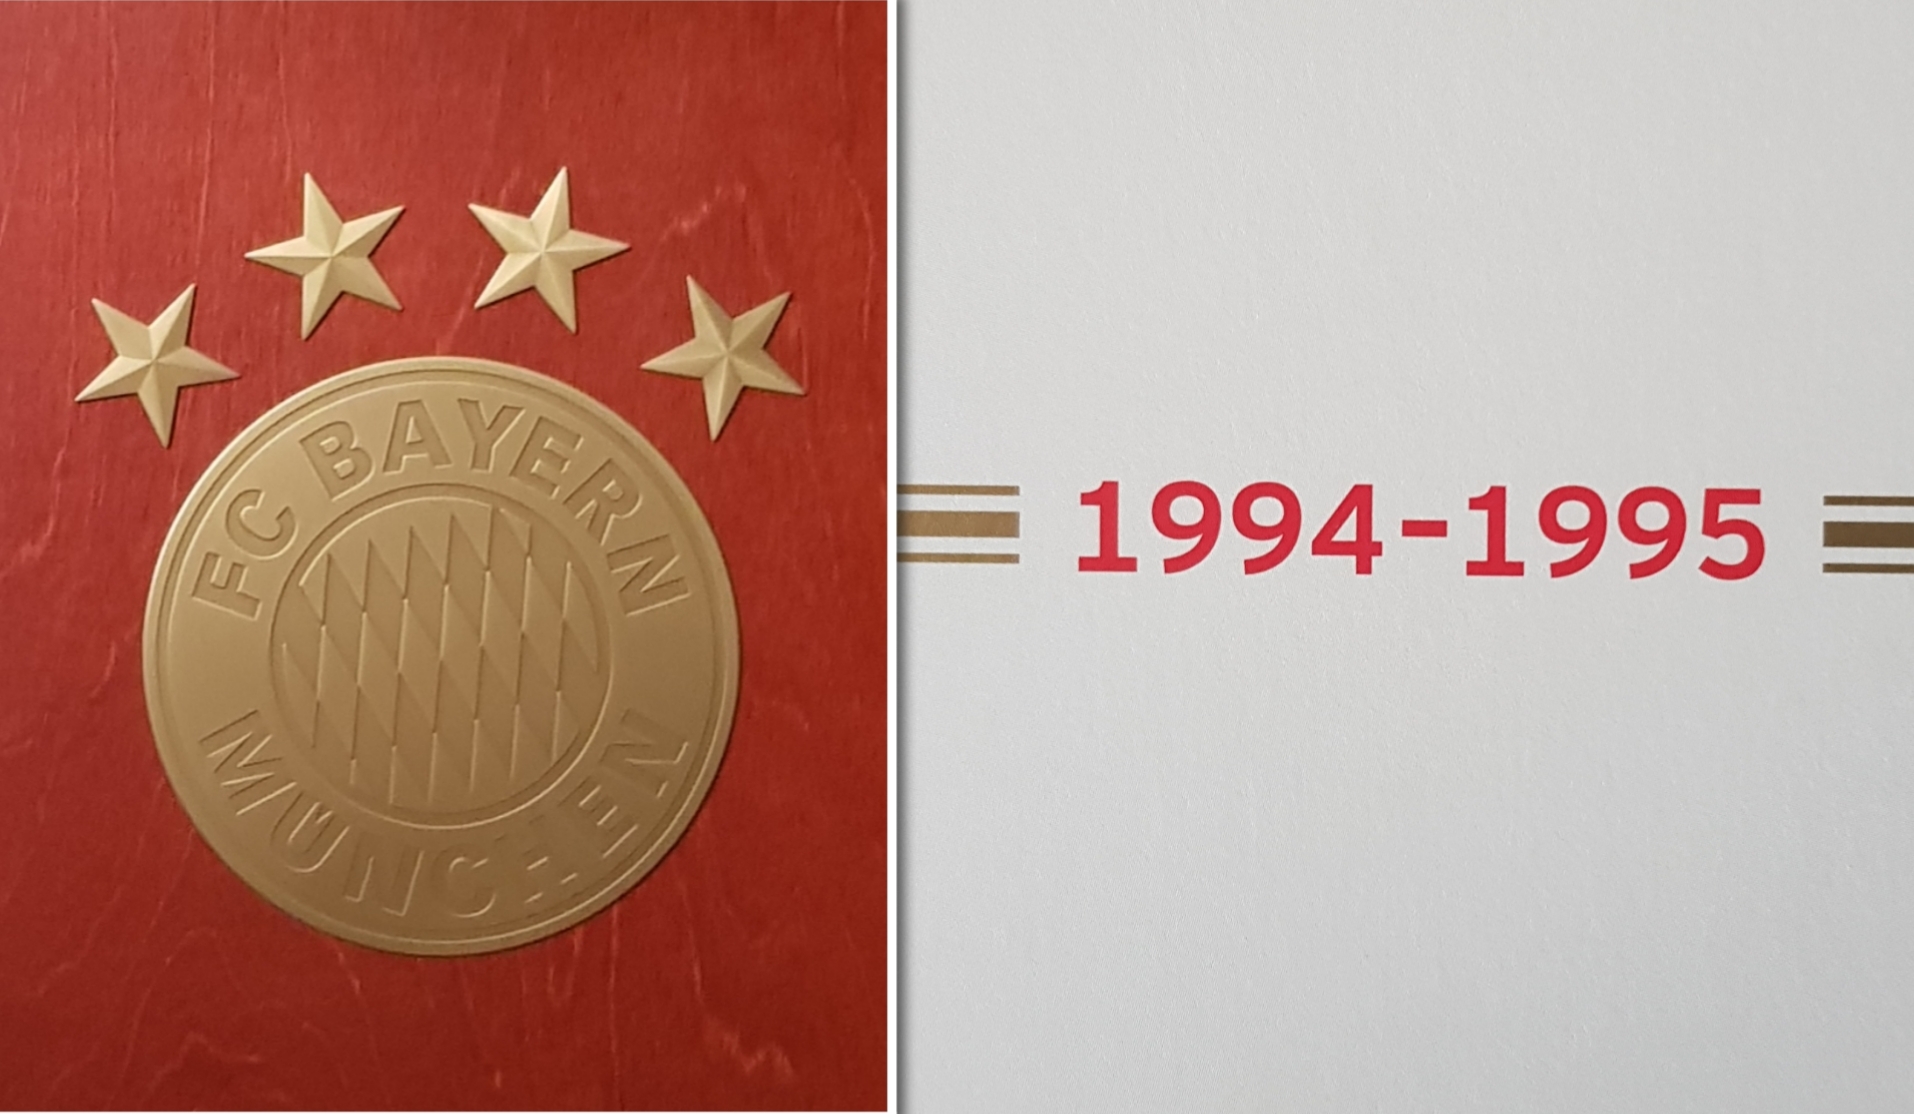 Der FC Bayern München : Die Saison   1994/95